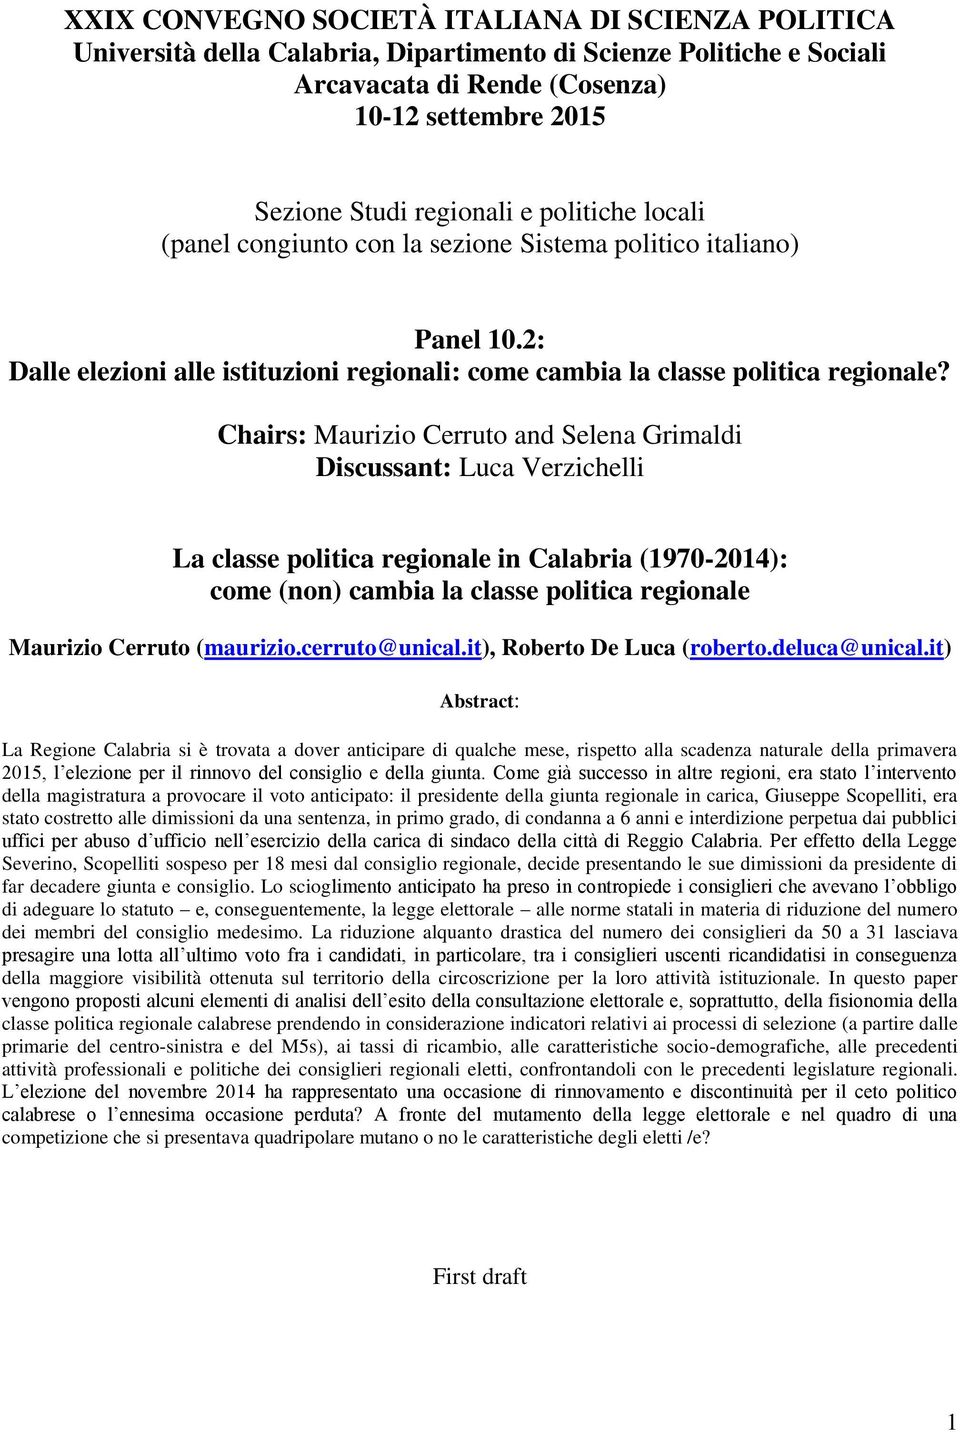 Chairs: Maurizio Cerruto and Selena Grimaldi Discussant: Luca Verzichelli La classe politica regionale in Calabria (97-4): come (non) cambia la classe politica regionale Maurizio Cerruto (maurizio.